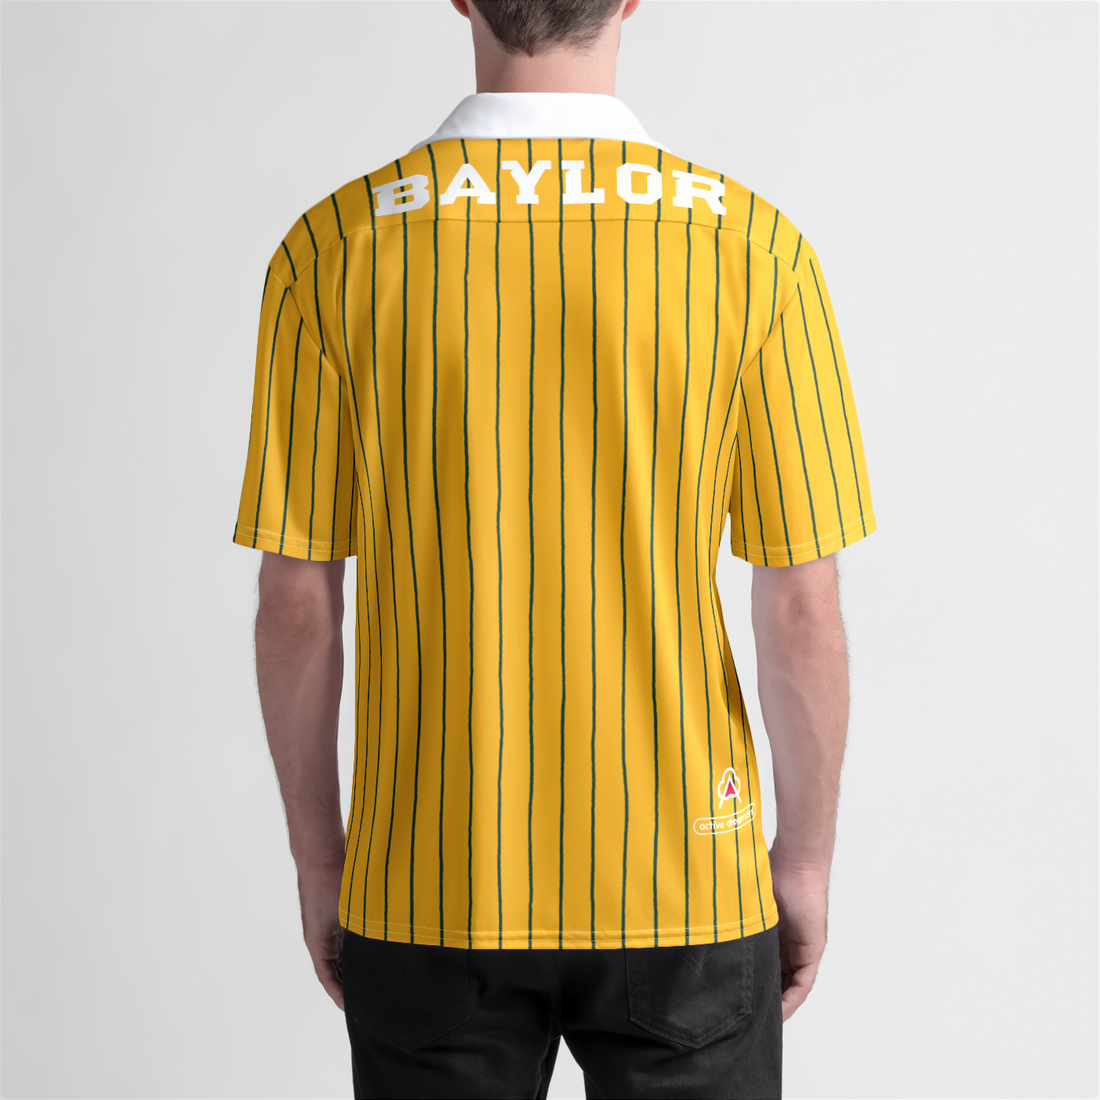 Baylor Beach Shirt